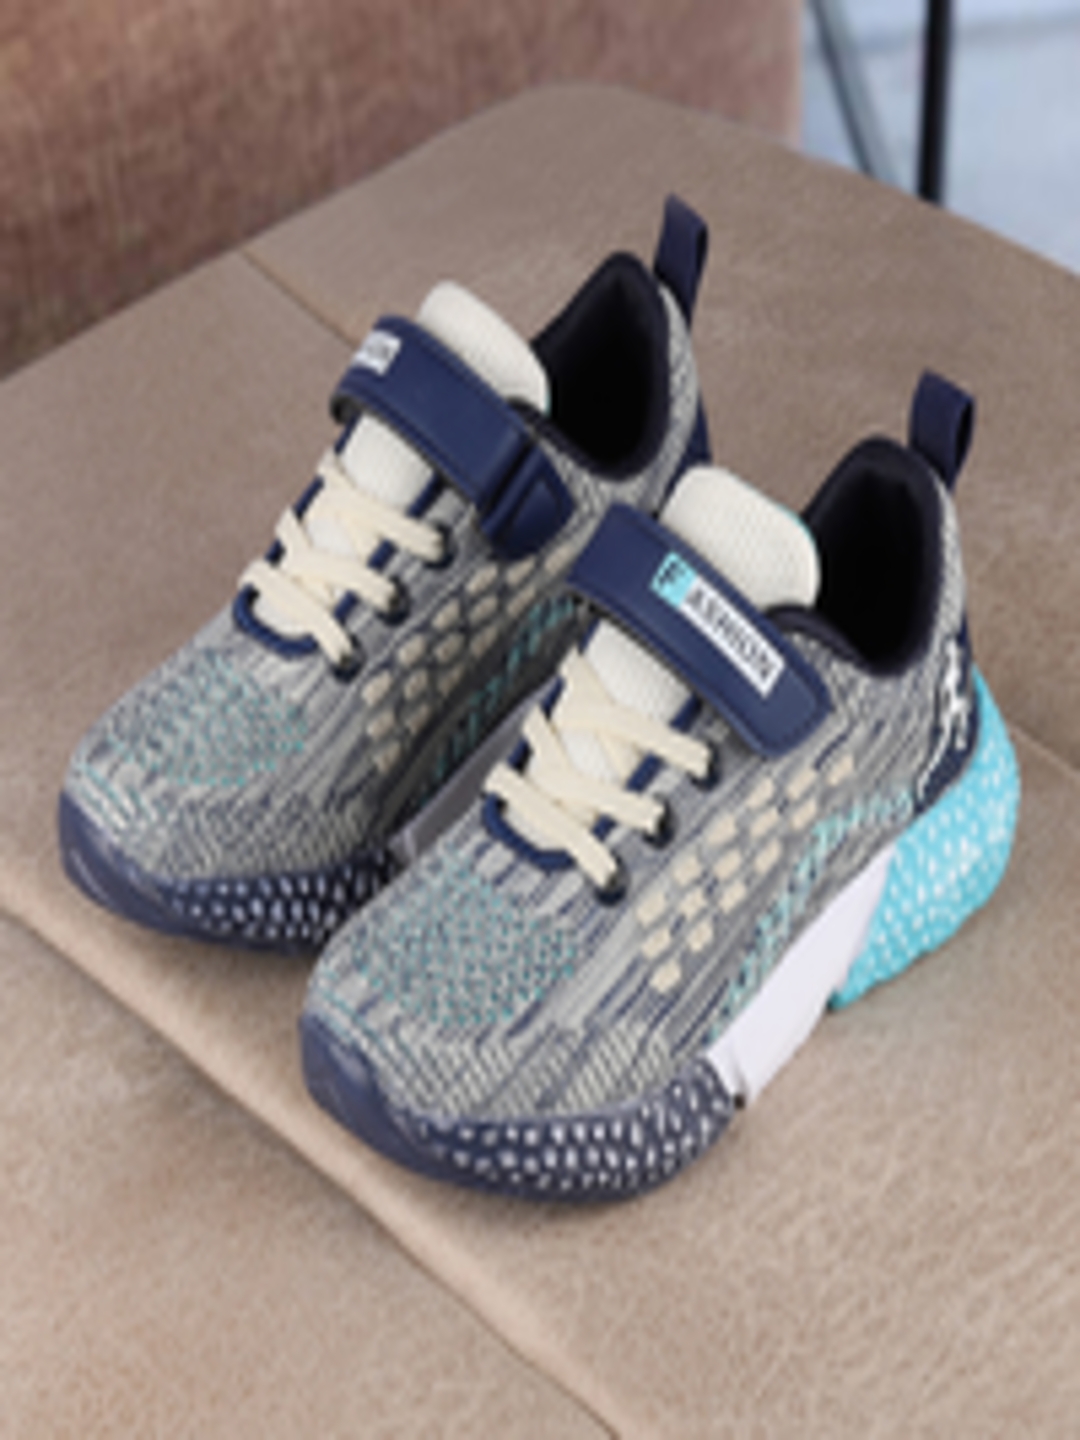 Buy Walktrendy Unisex Kids Navy Blue Slip On Sneakers - Casual Shoes ...